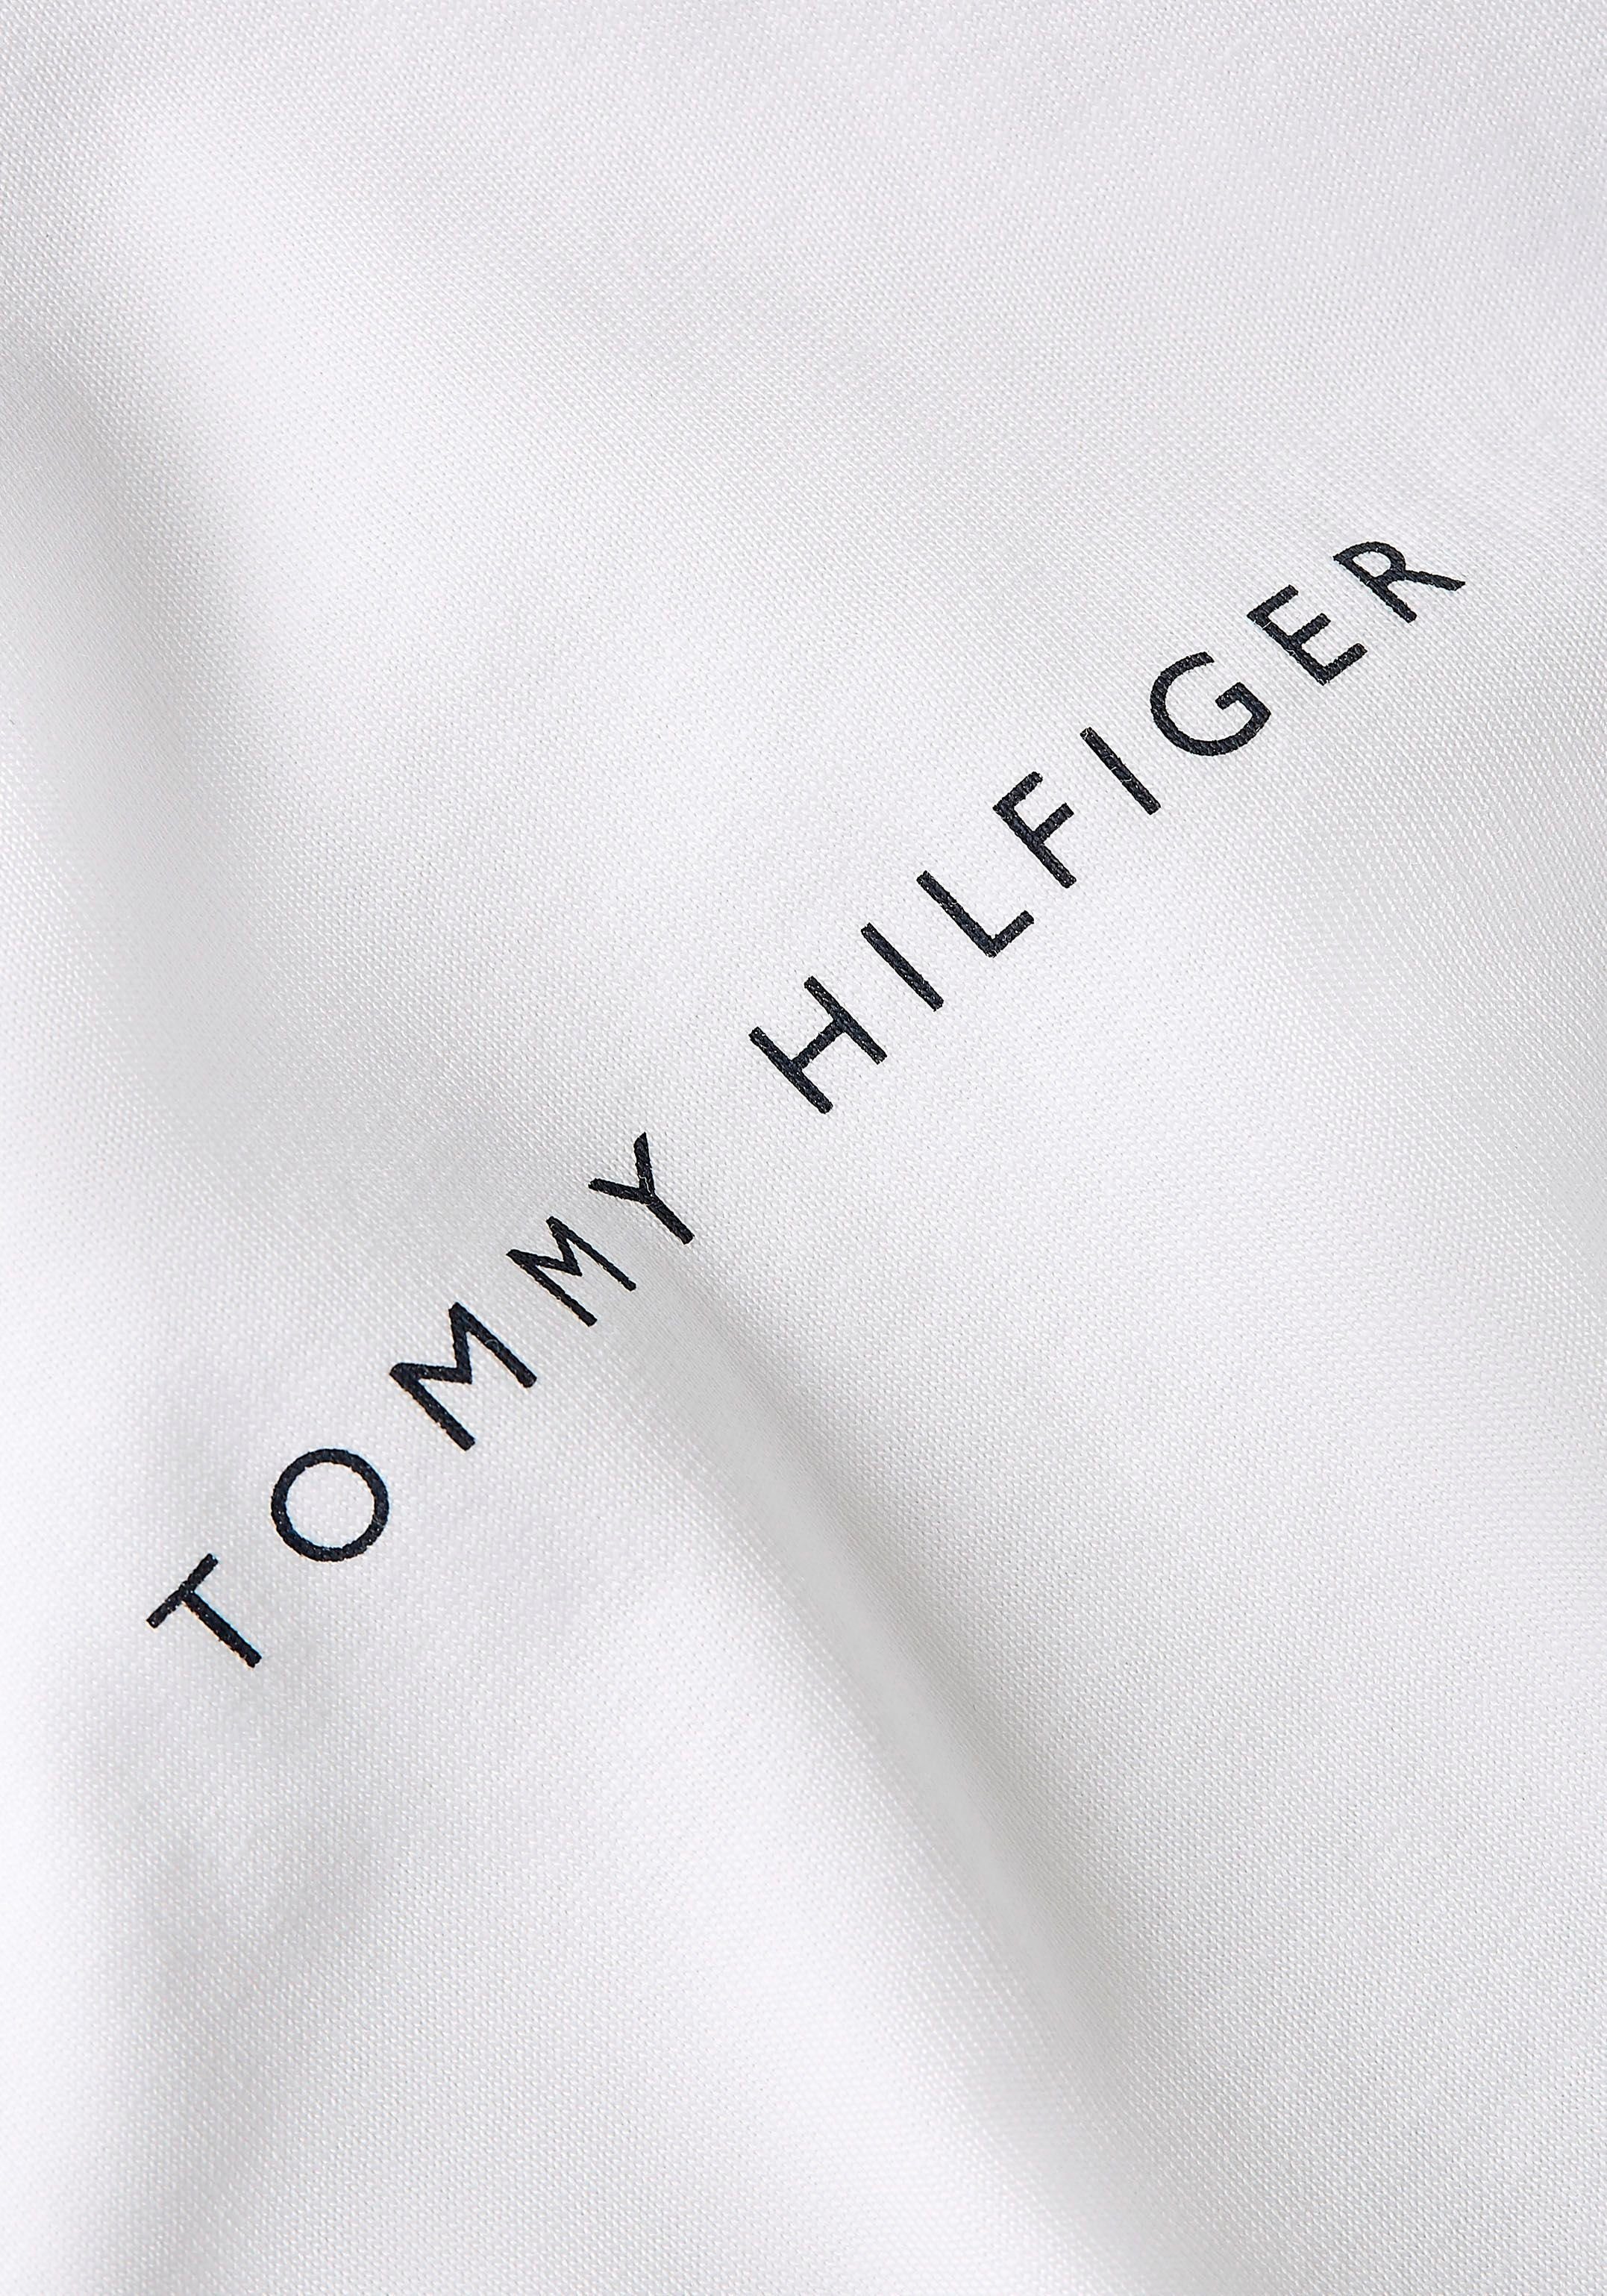 MULTI T-Shirt Hilfiger weiß Tommy PLACEMENT TEE im schlichten Design